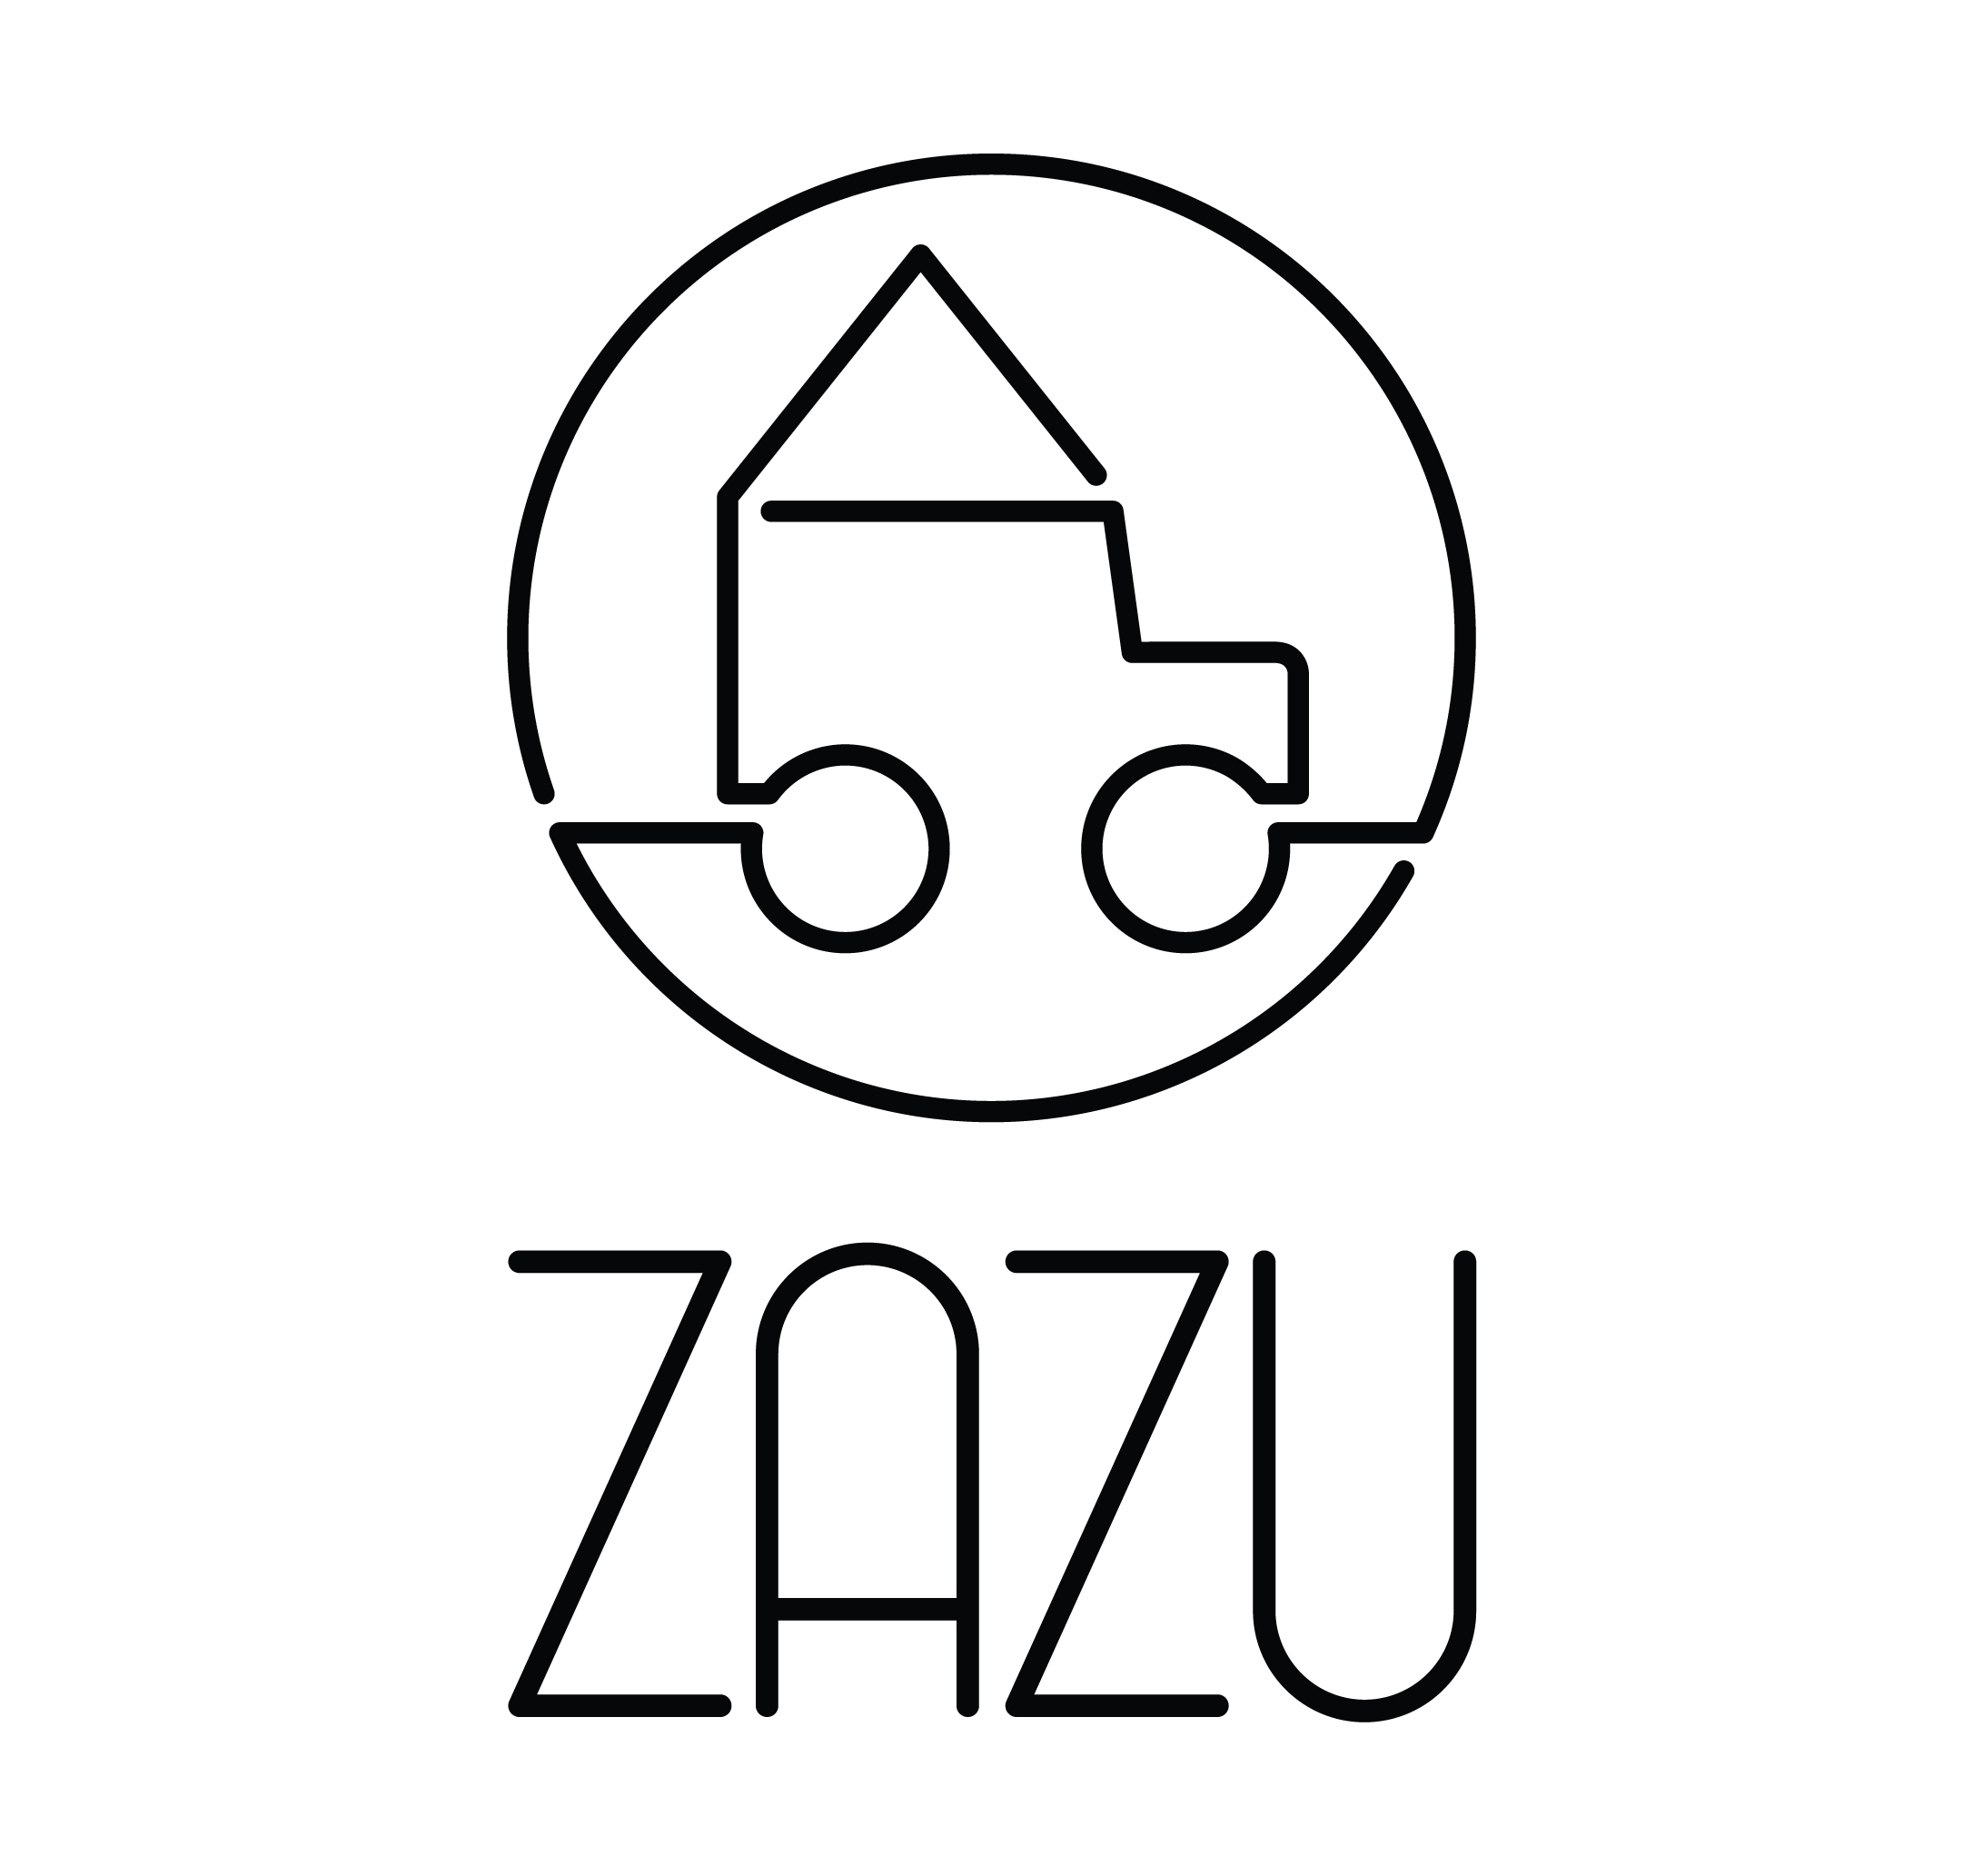 Zazu Campers